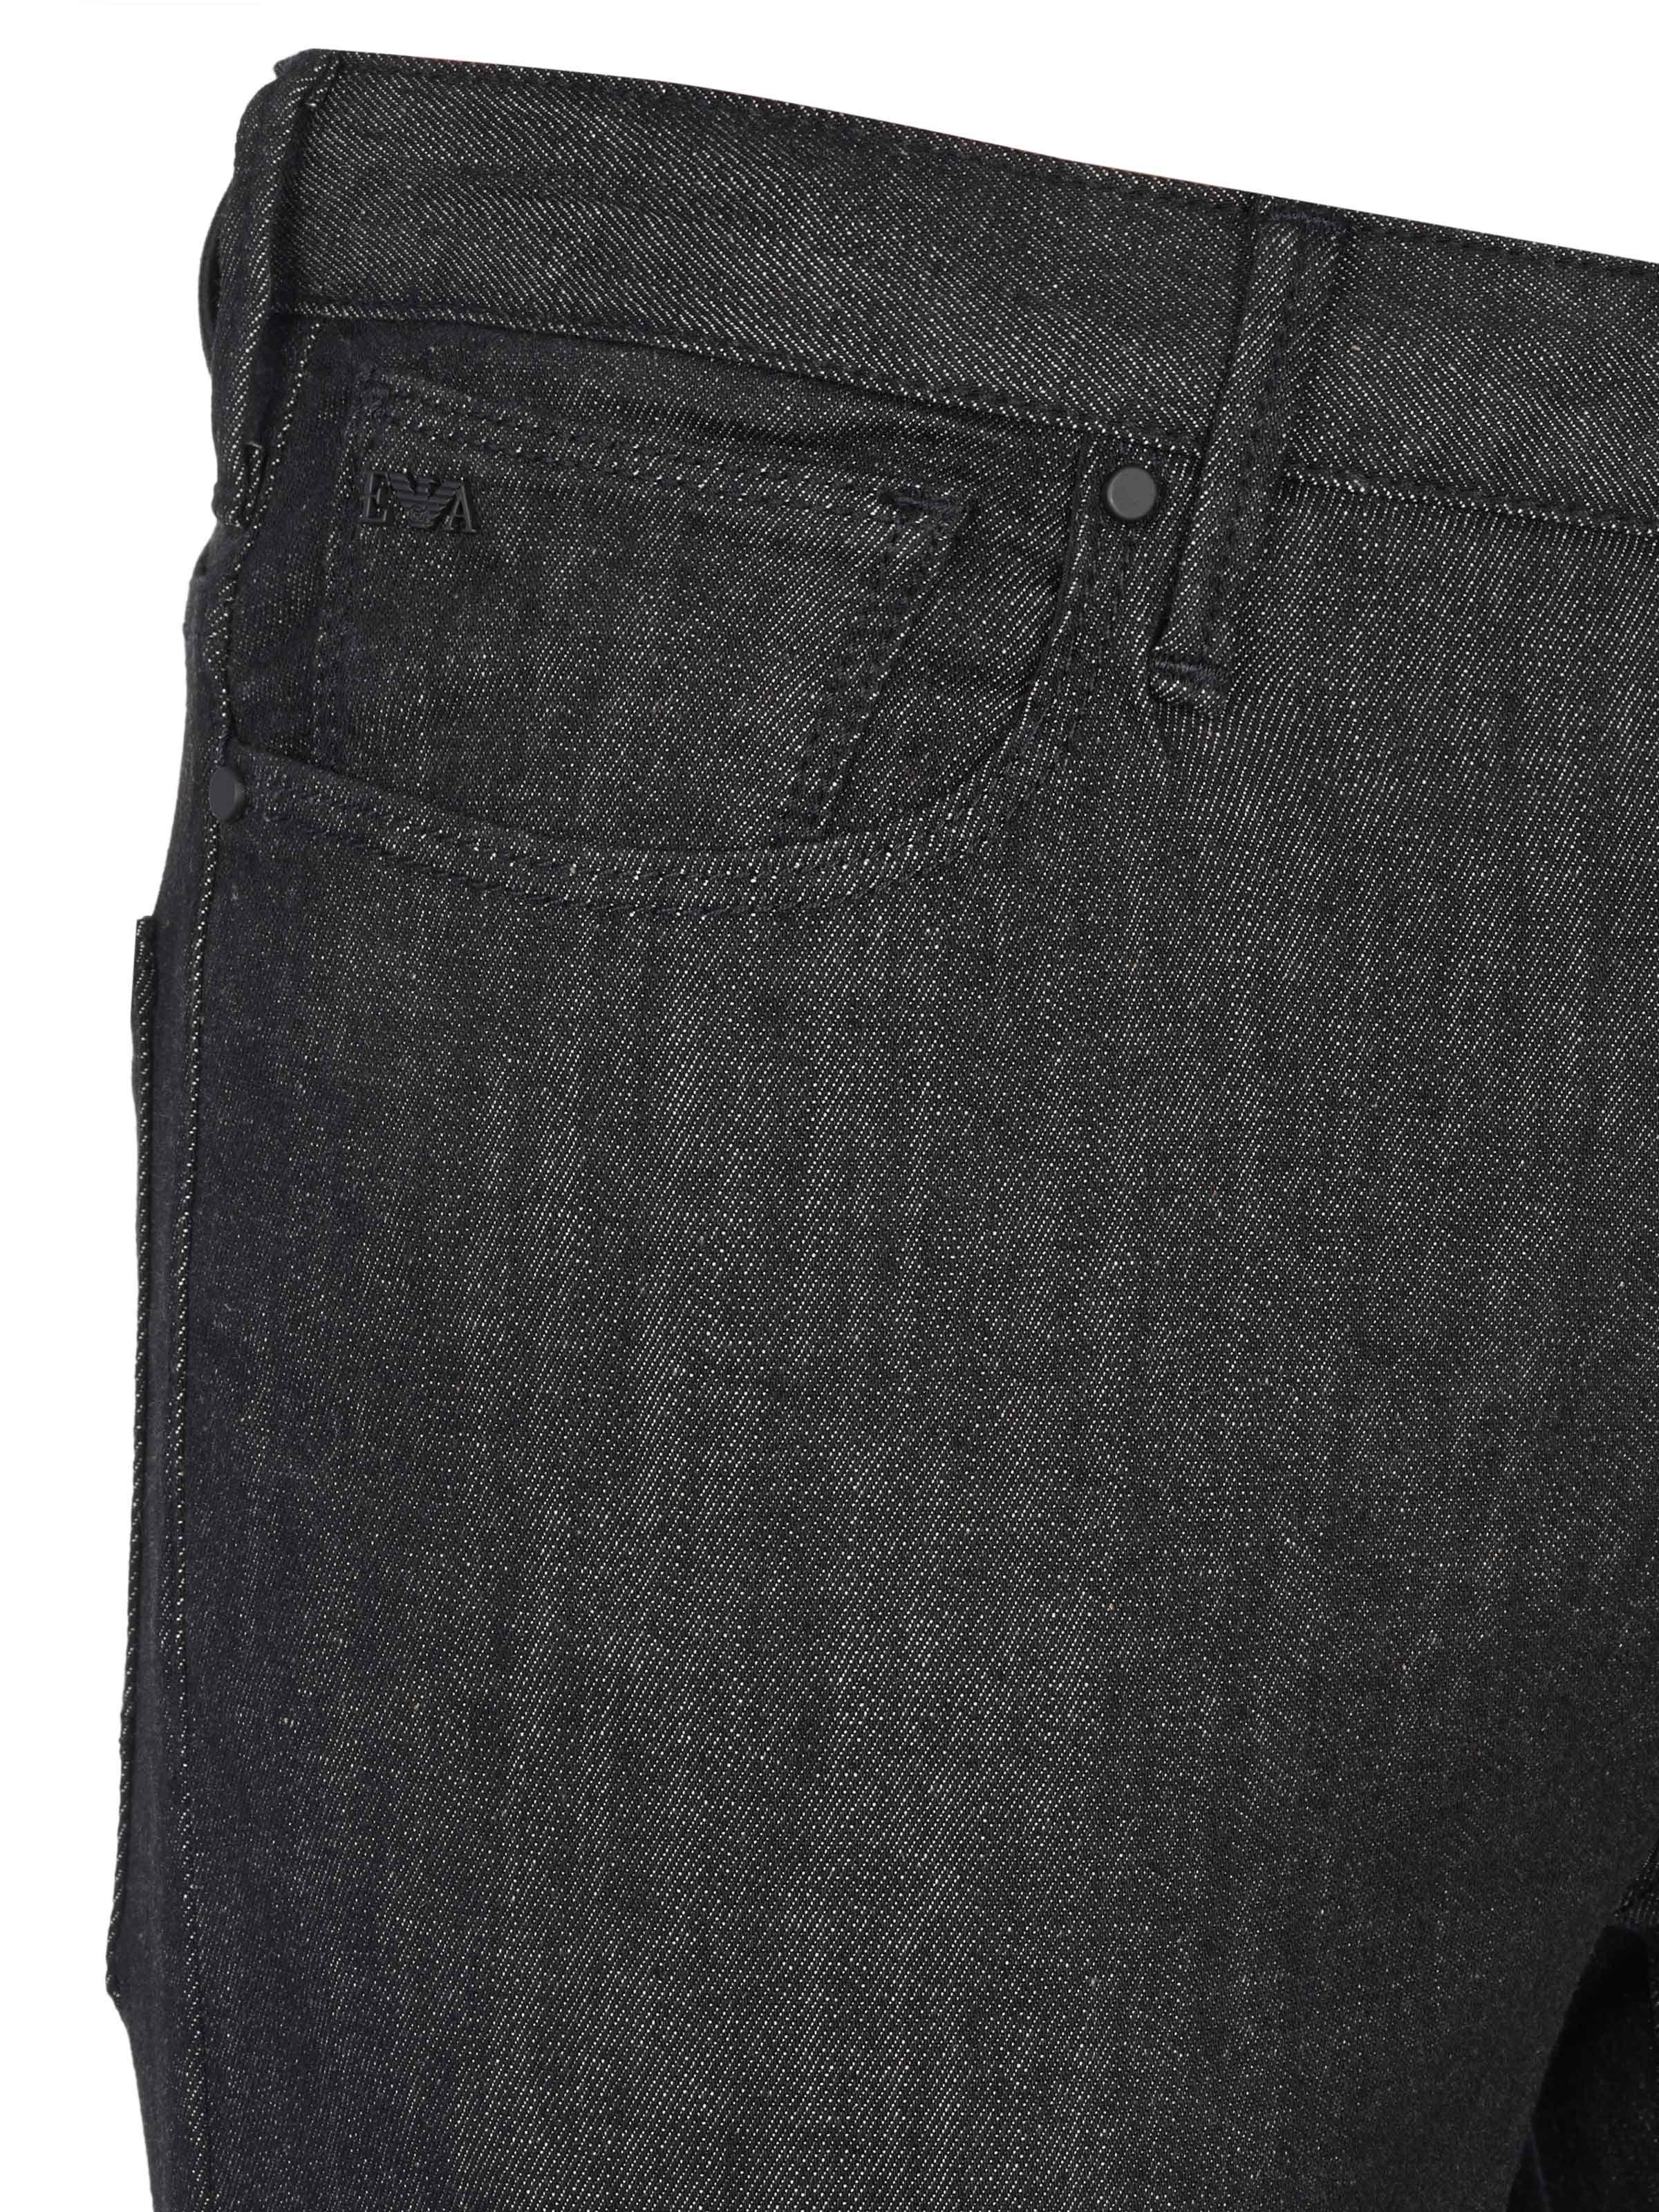 Jeans Slim-fit-Jeans Emporio Armani Emporio Armani